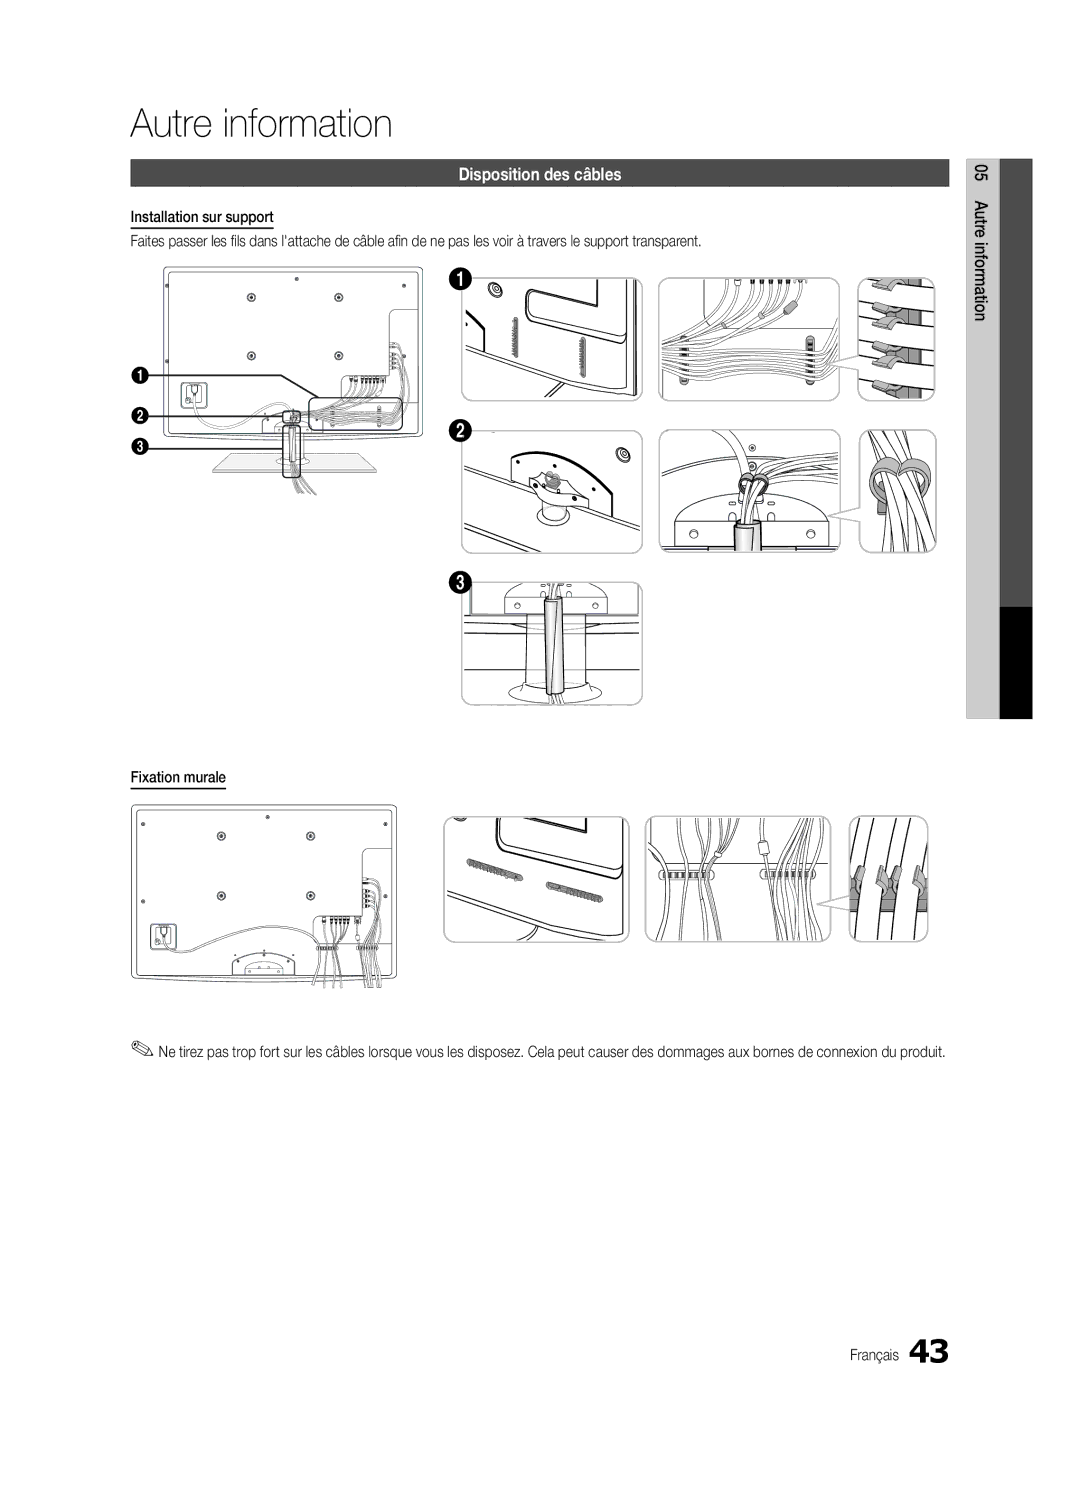 Samsung UN40C5000, BN68-02625B-02, Series C5 user manual Autre information, Disposition des câbles, Fixation murale 